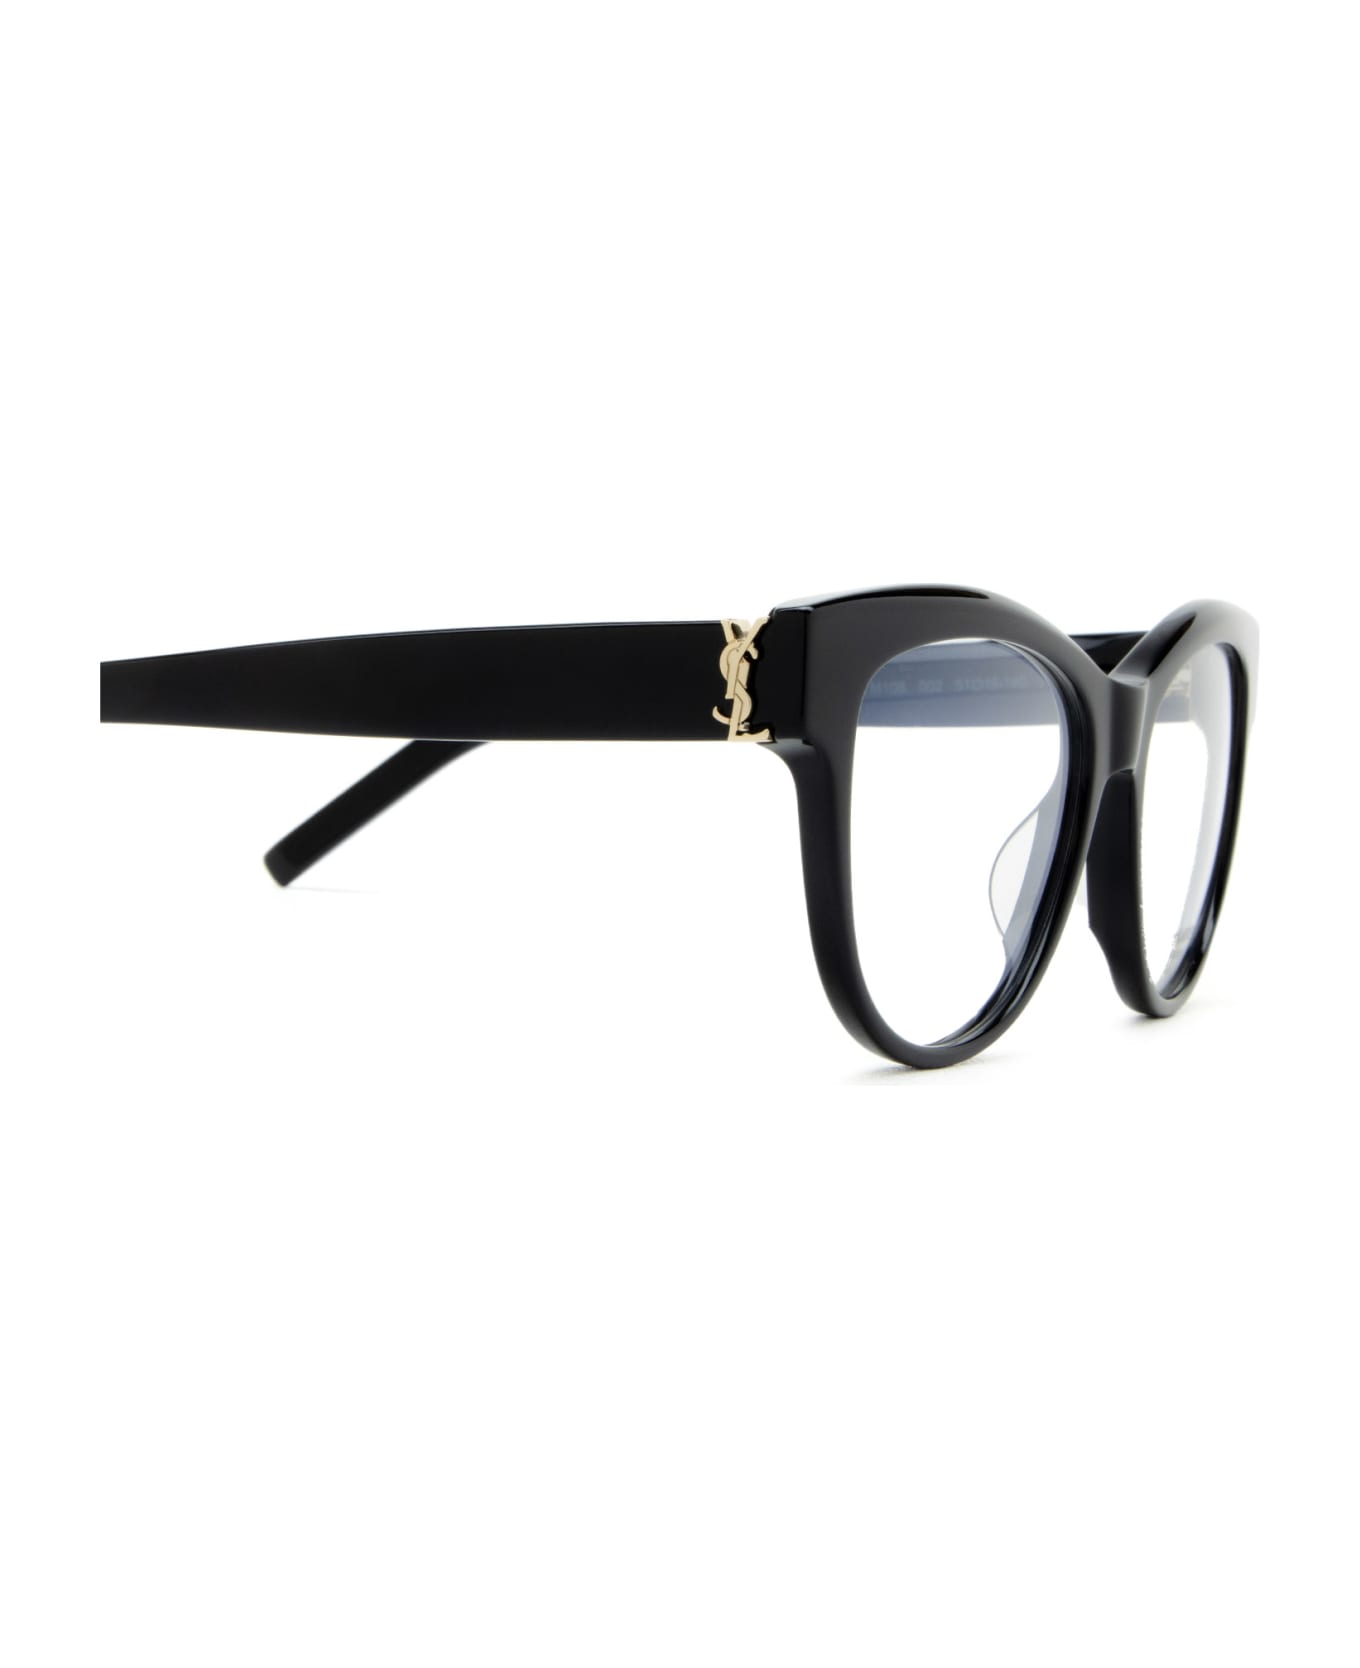 Saint Laurent Eyewear Sl M108 Black Glasses - Black アイウェア